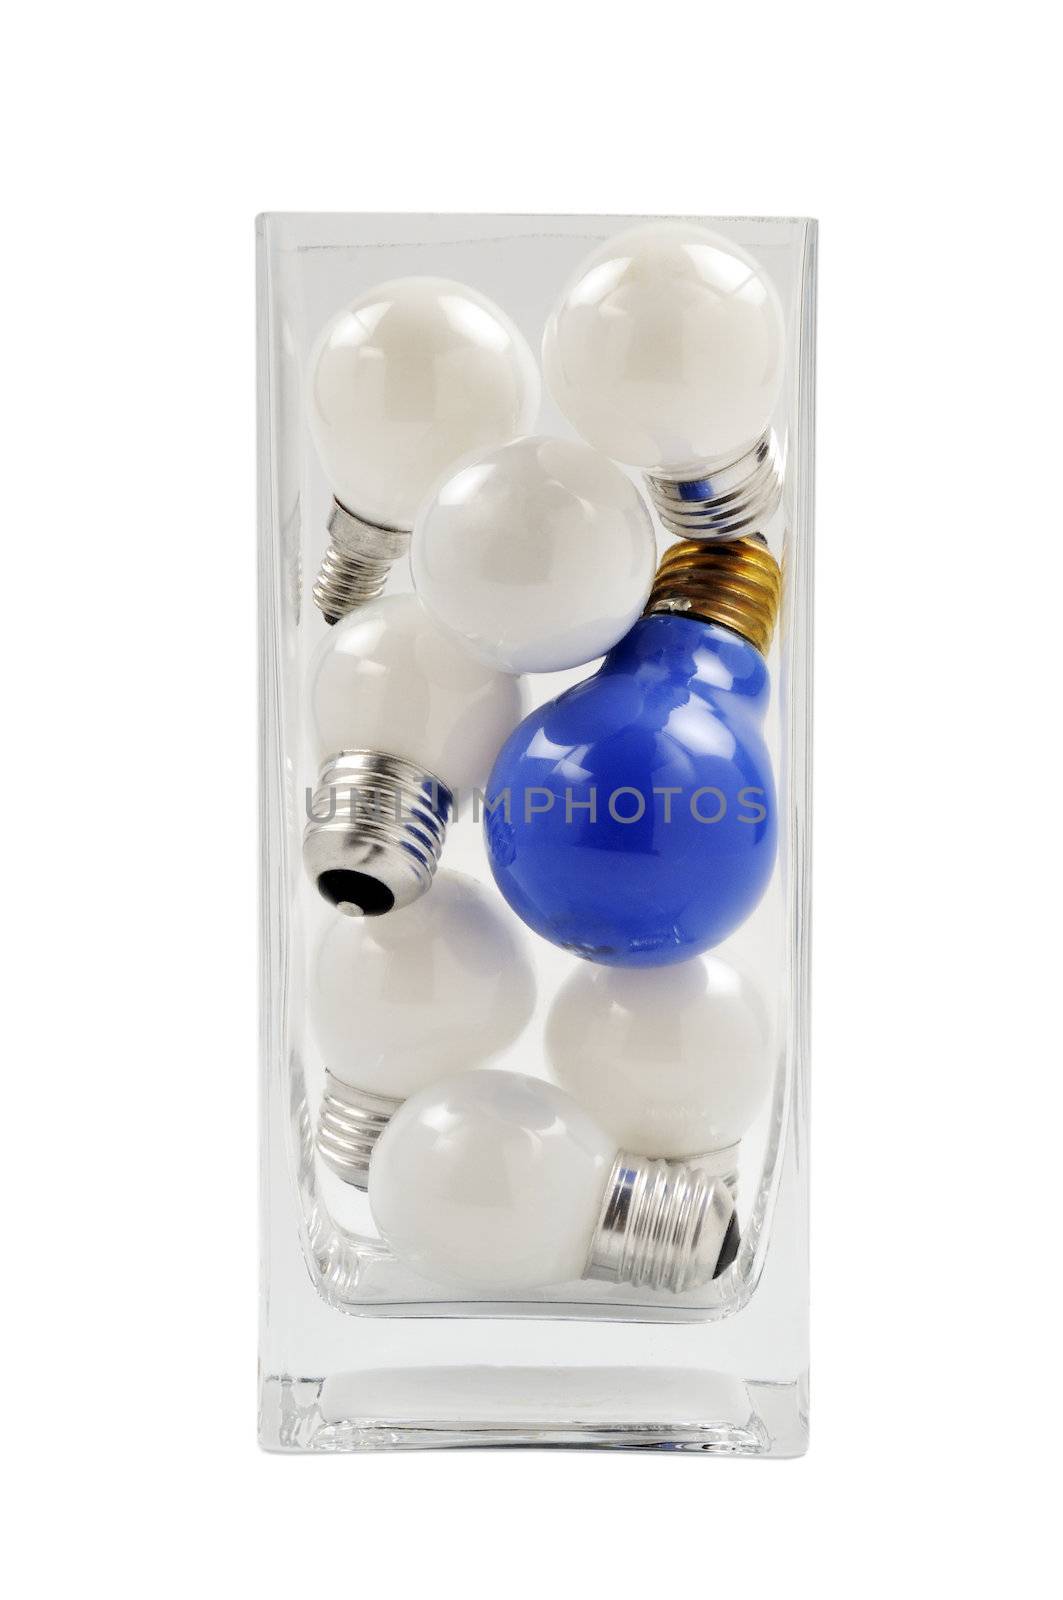 Light bulbs by Vagabond